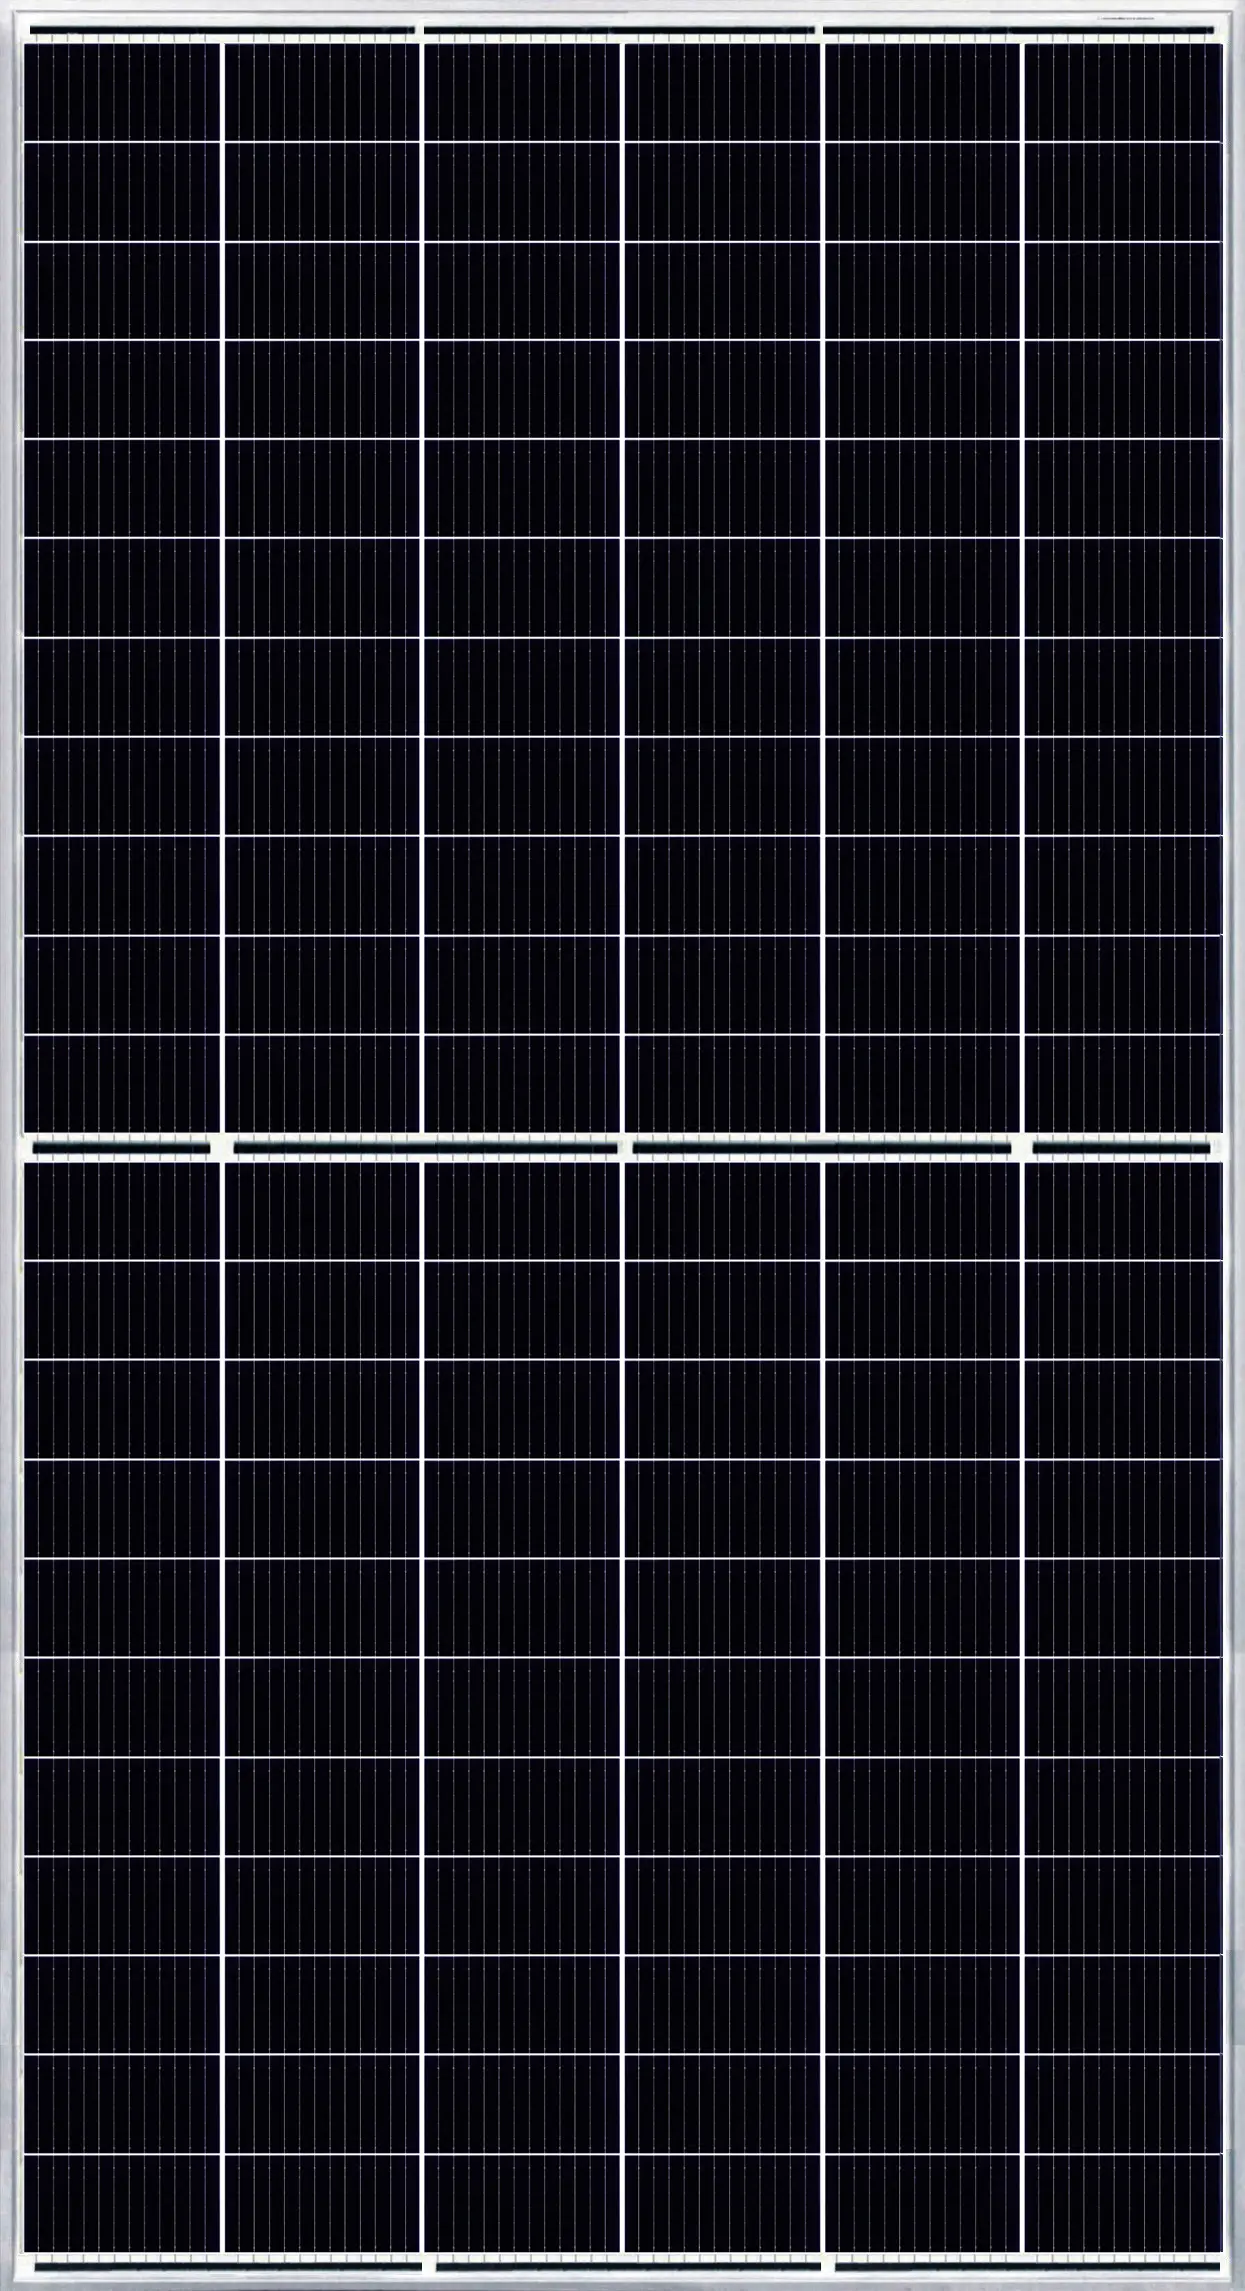 CANADIAN SOLAR BIHIKU7 655W MARCO DE PLATA BIFA 35MM T4 (SU=31PCS) Módulo Solar